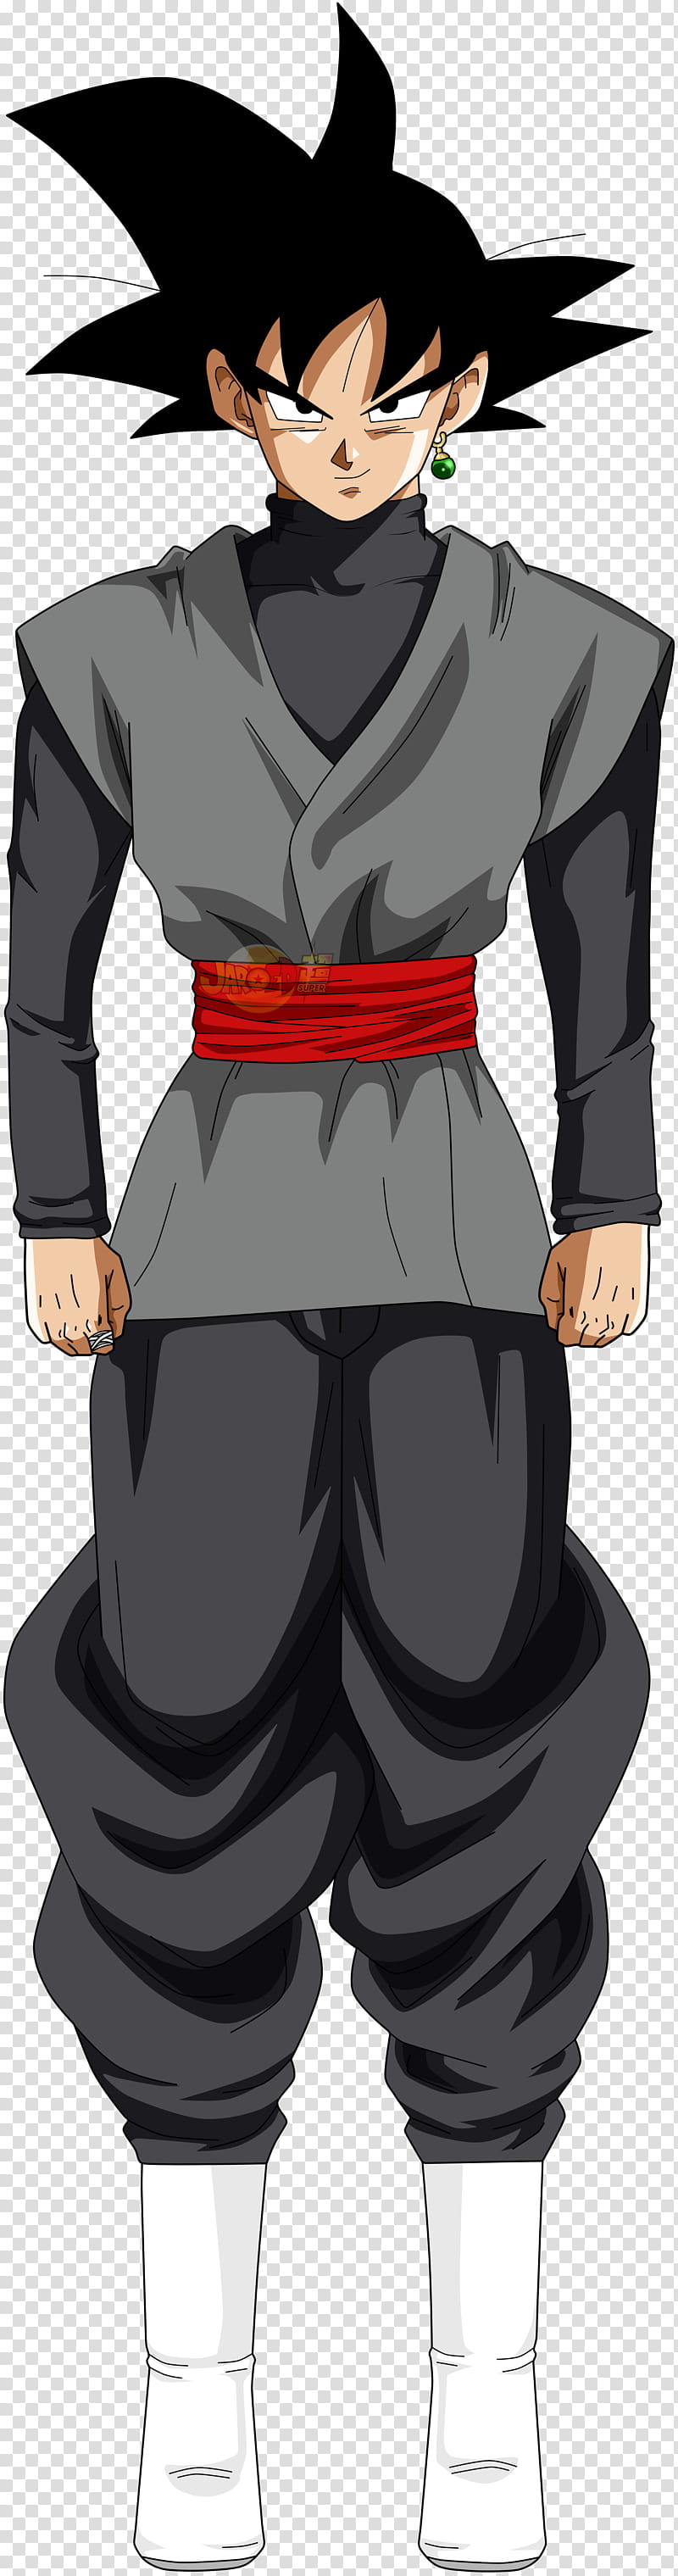 Goku Black v, Goku Black illustration transparent background PNG clipart